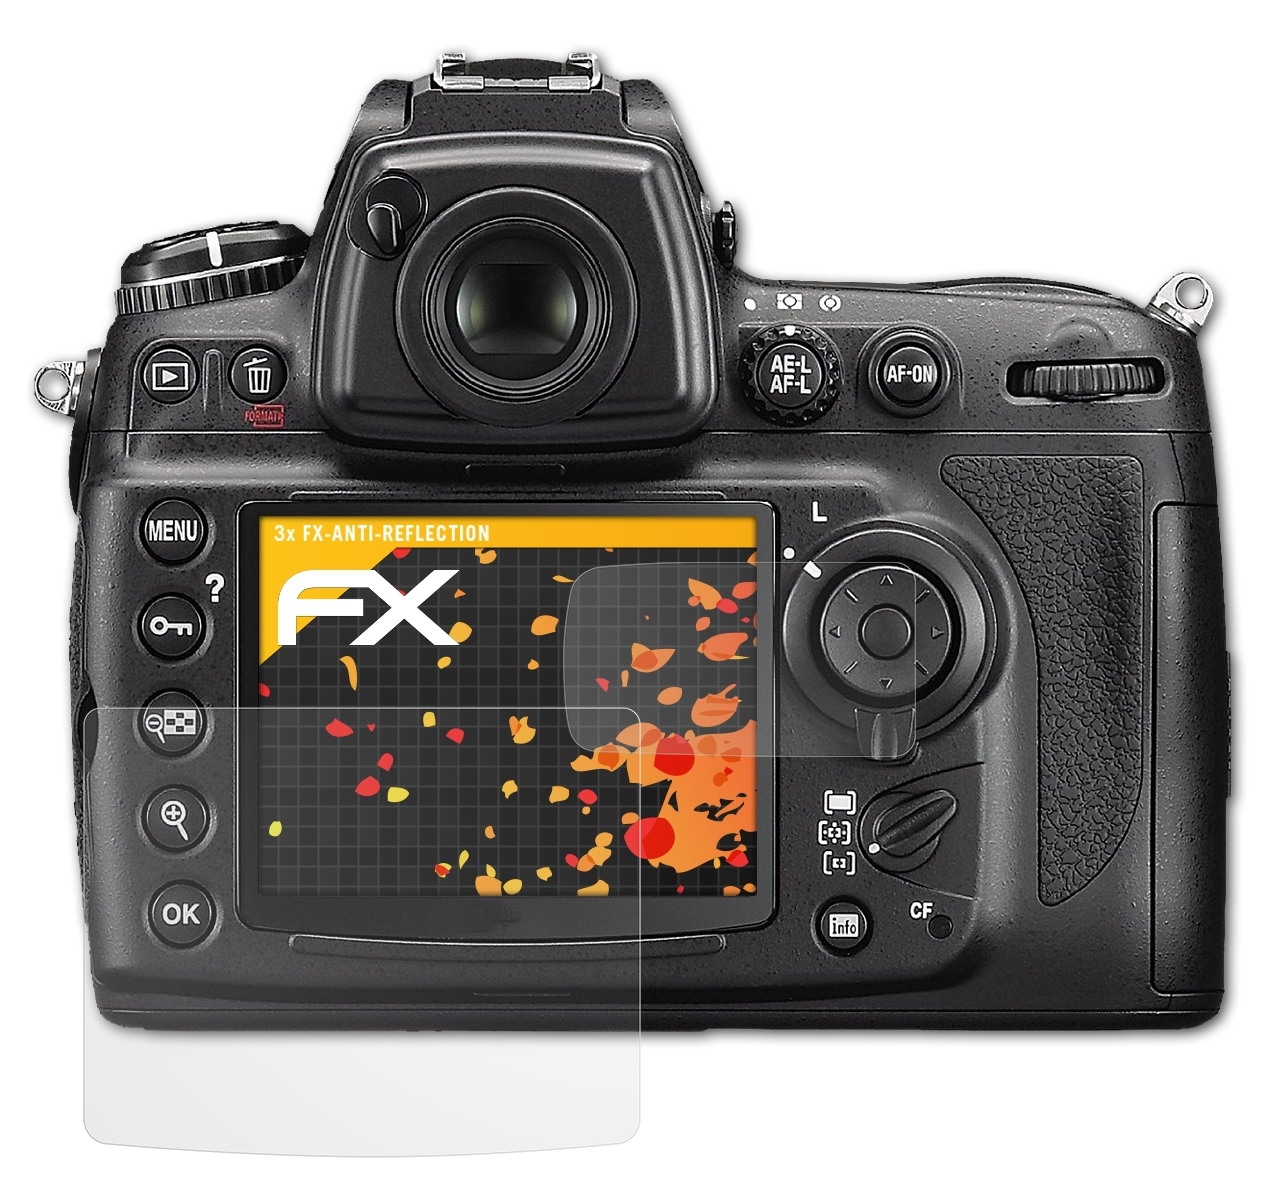 Displayschutz(für 3x D700) Nikon ATFOLIX FX-Antireflex